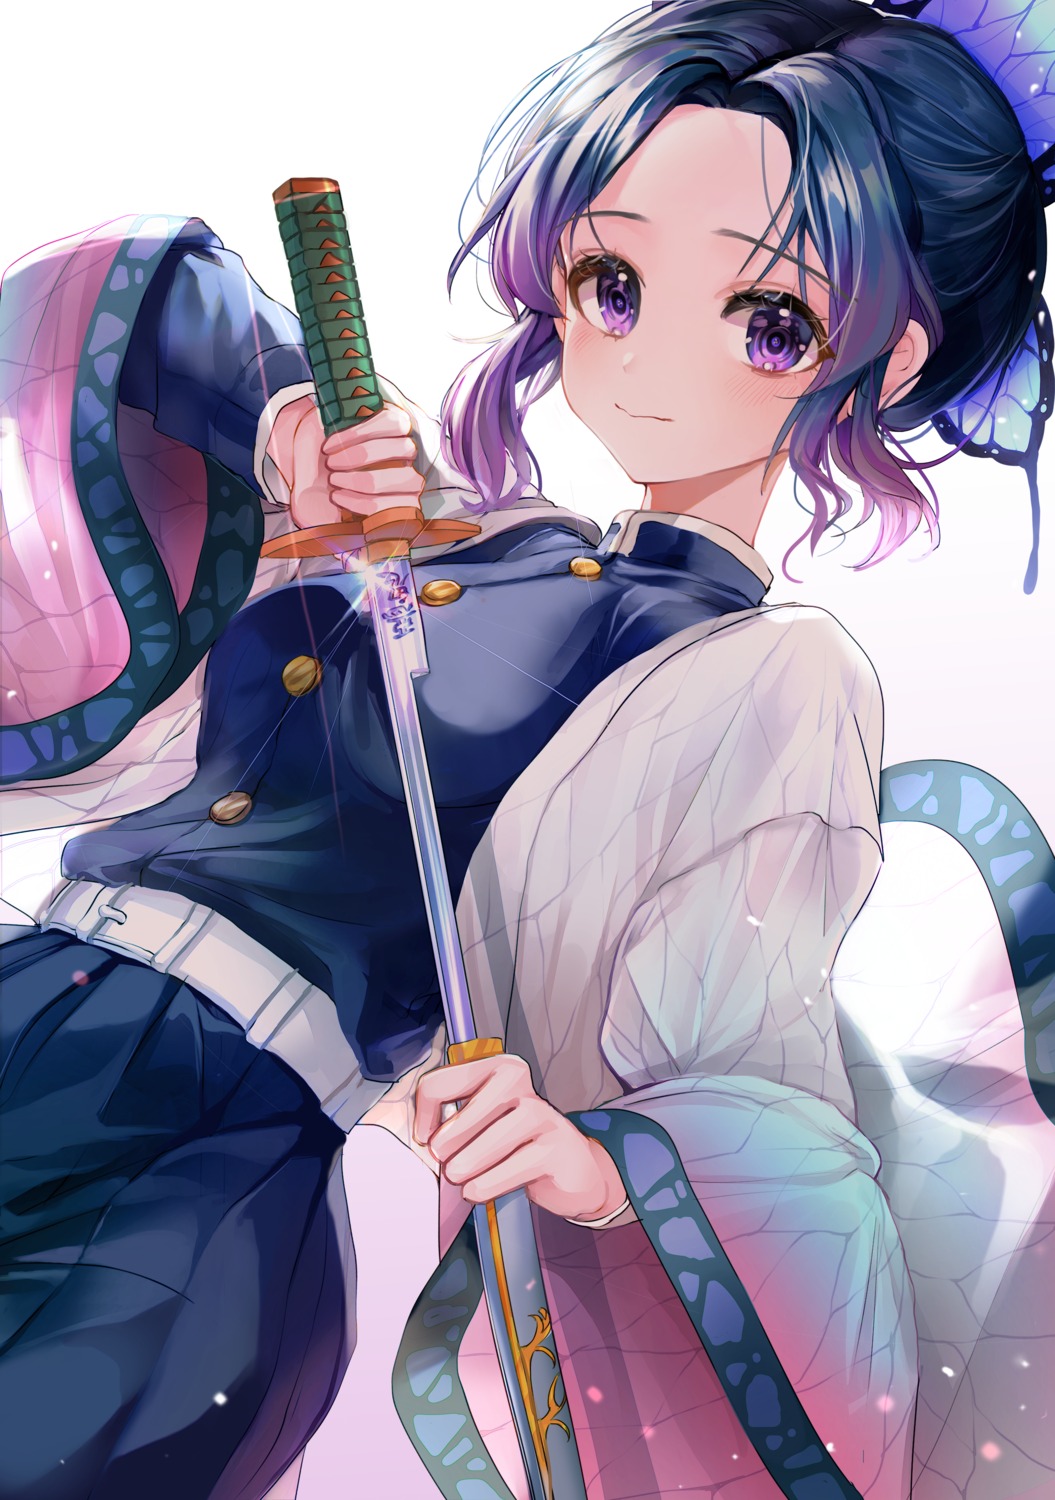 japanese_clothes kimetsu_no_yaiba kochou_shinobu myowa sword uniform